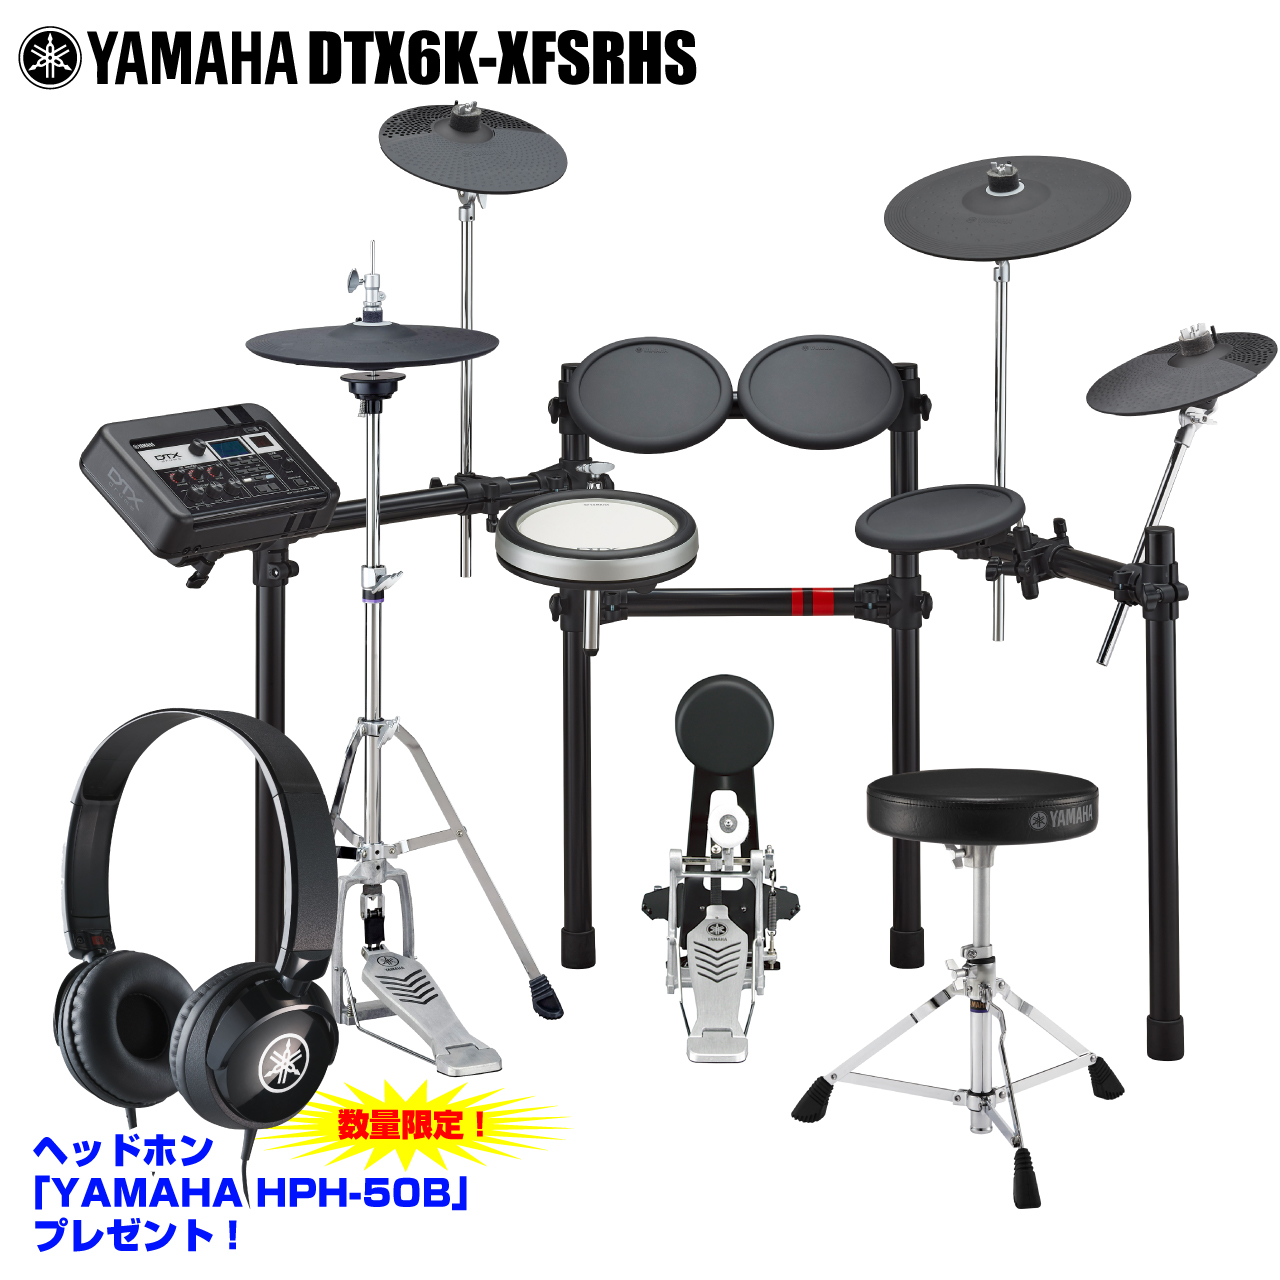 ヤマハ DTX700 電子ドラムセット 要メンテナンス - 打楽器、ドラム